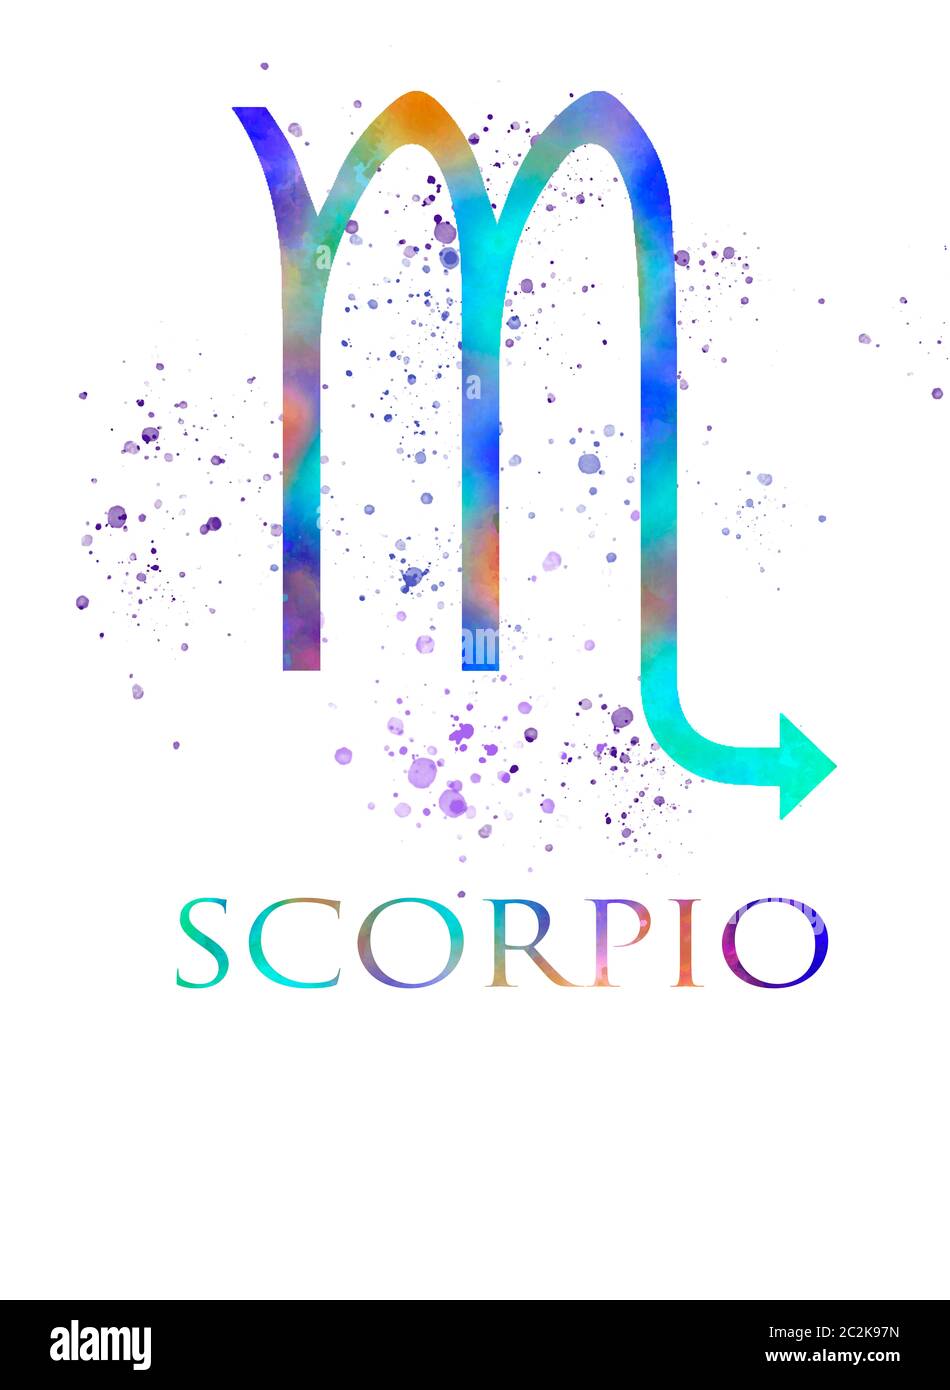 Scorpio zodiac sign in watercolor Stock Photo